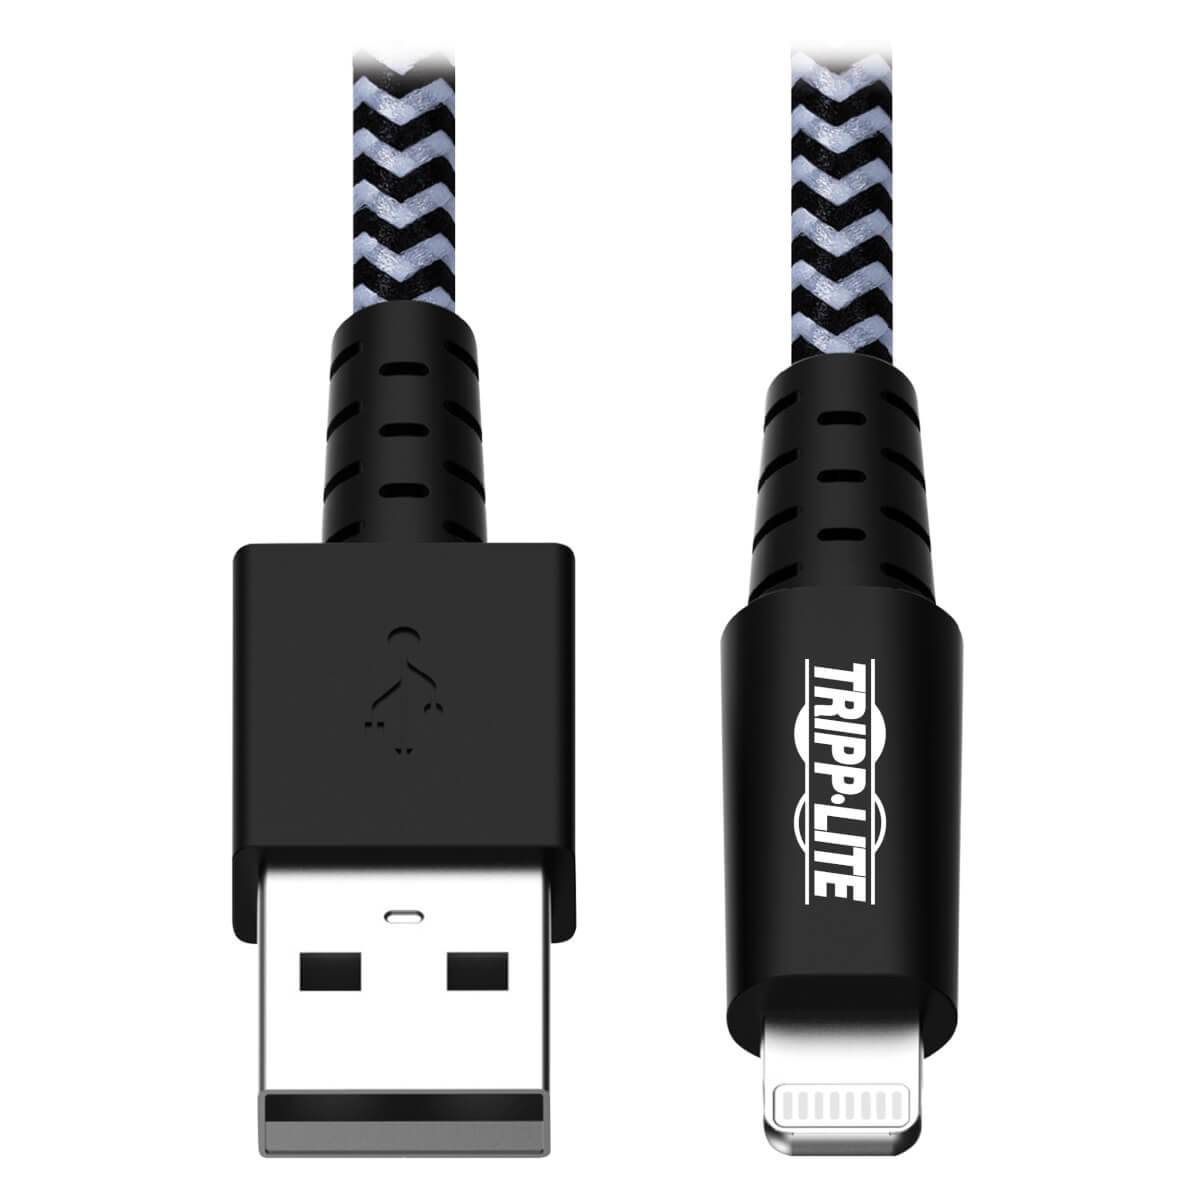 Rca Informatique - Image du produit : USB SYNC CHARGE CBL HVY DUTY WITH LIGHTNING CONNECTOR 1.83 M